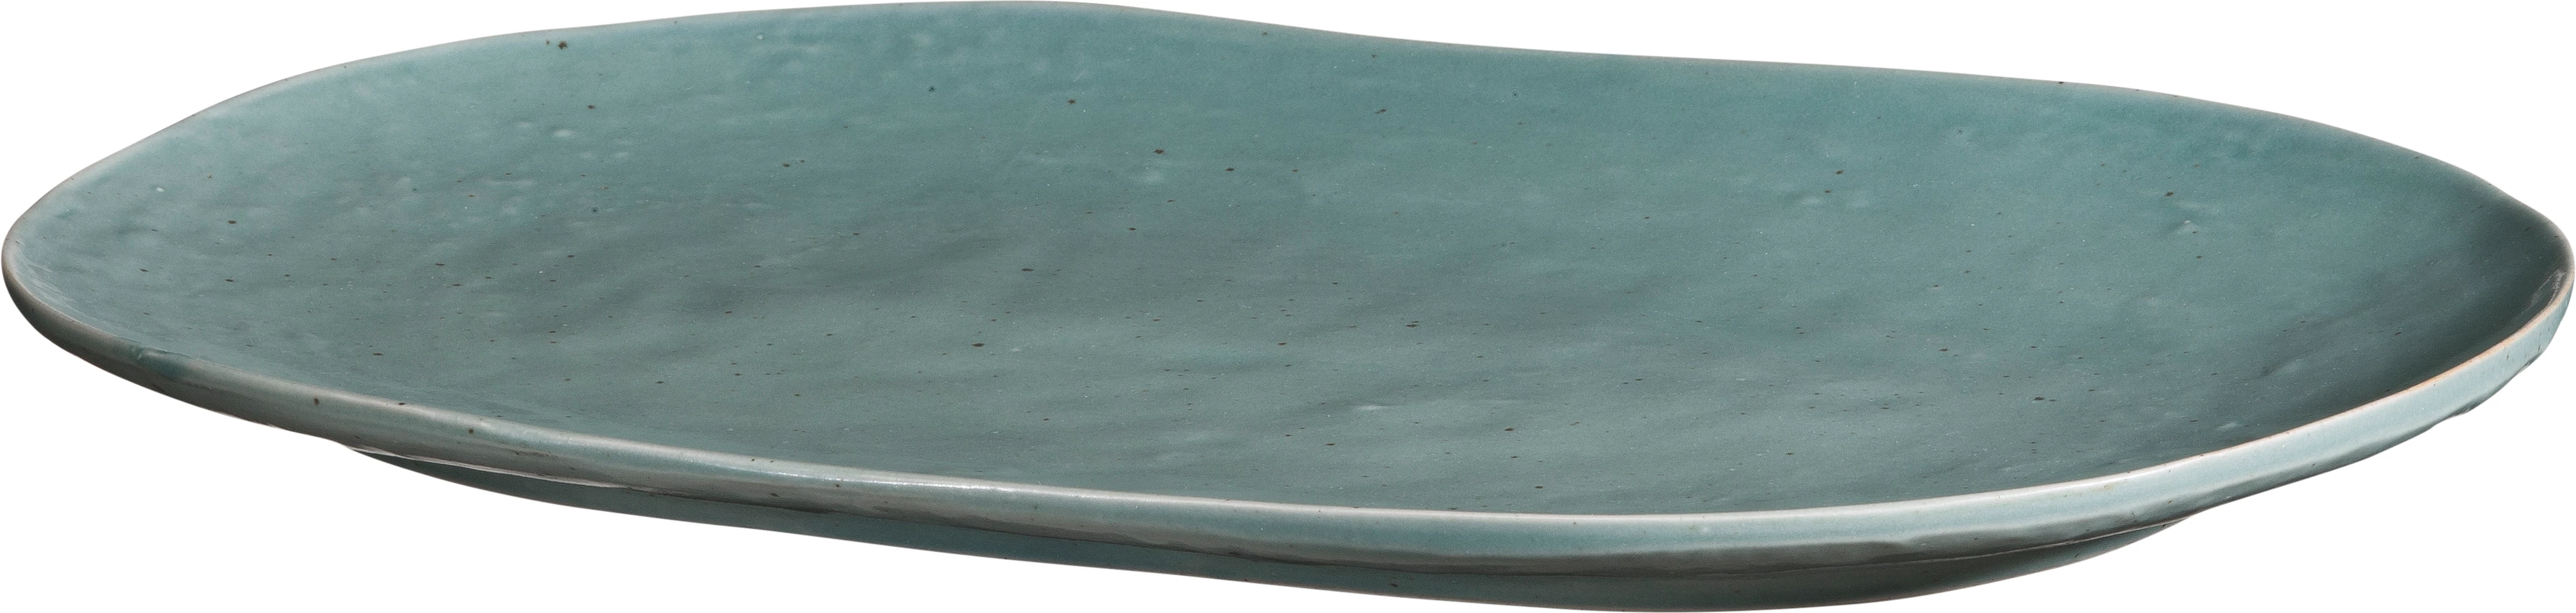 Leafs oval tallerken, grøn, 35 x 23,5 cm